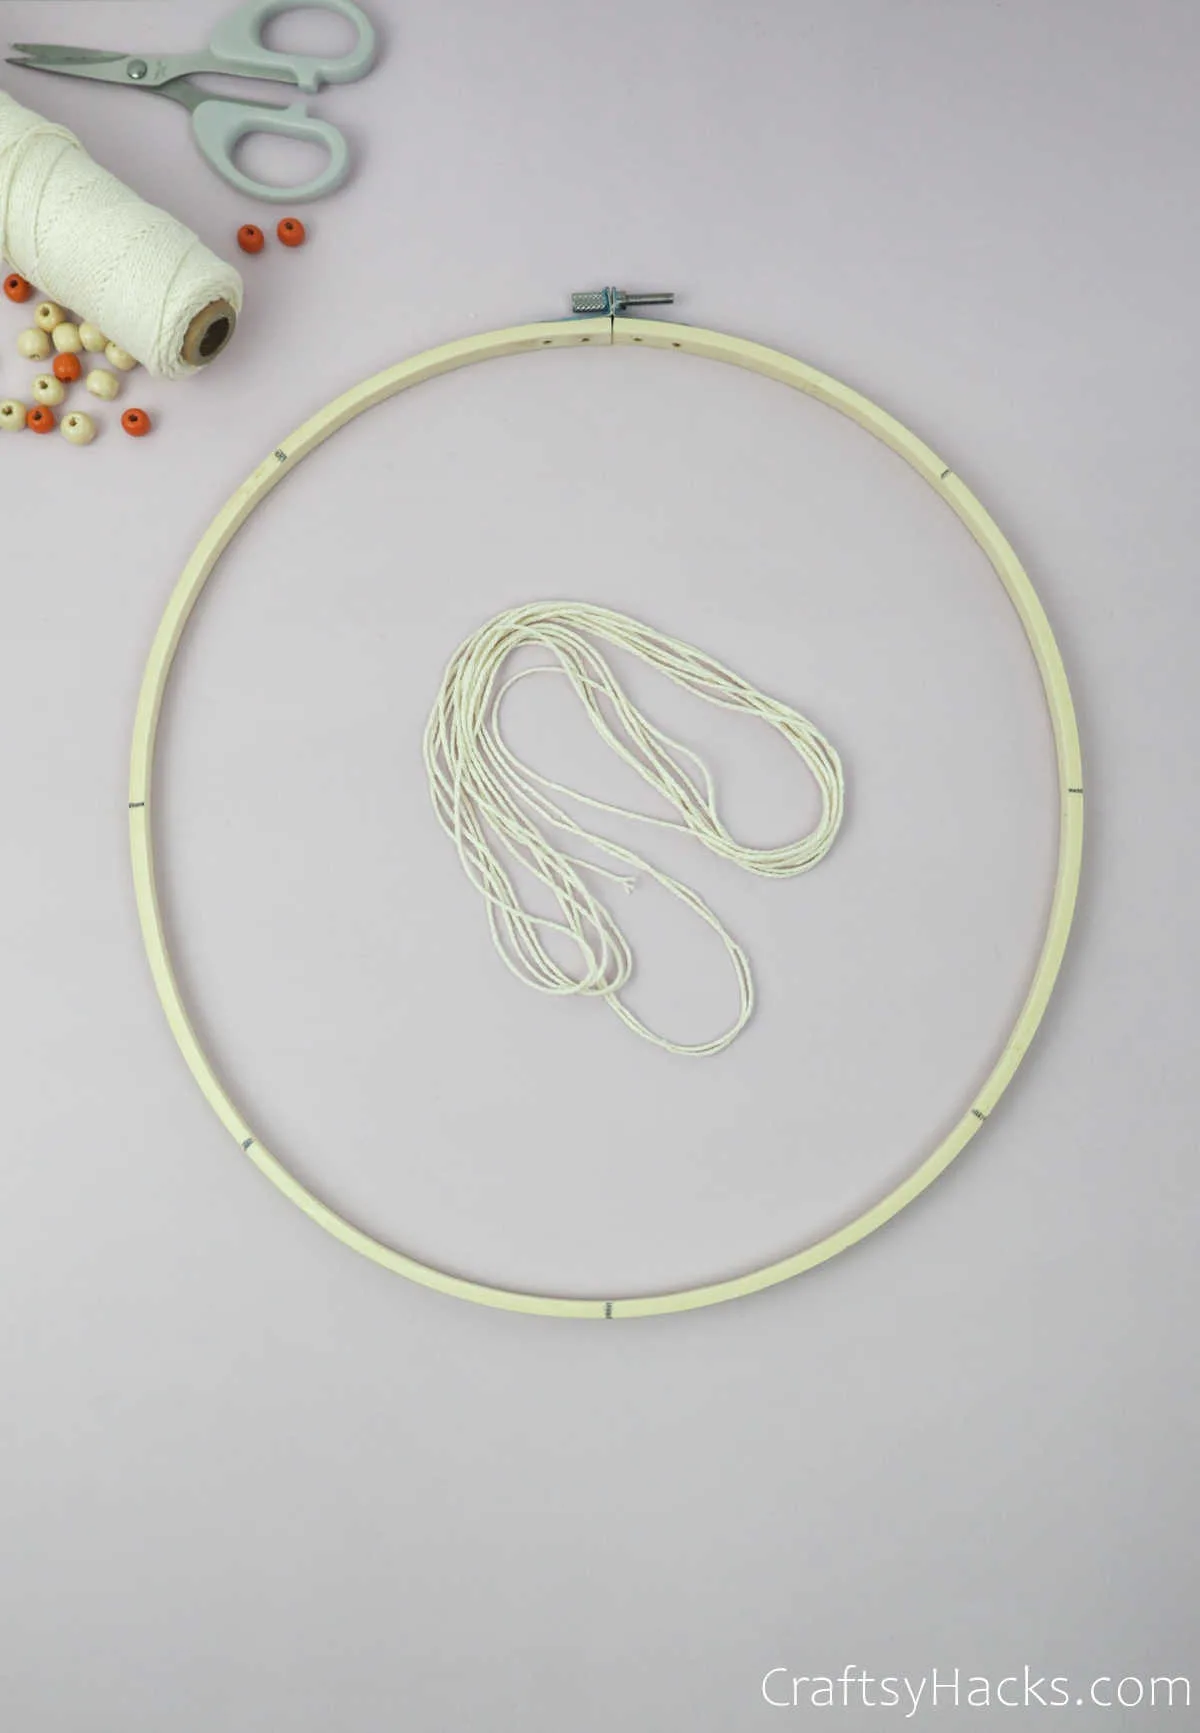 bundle on string in hoop